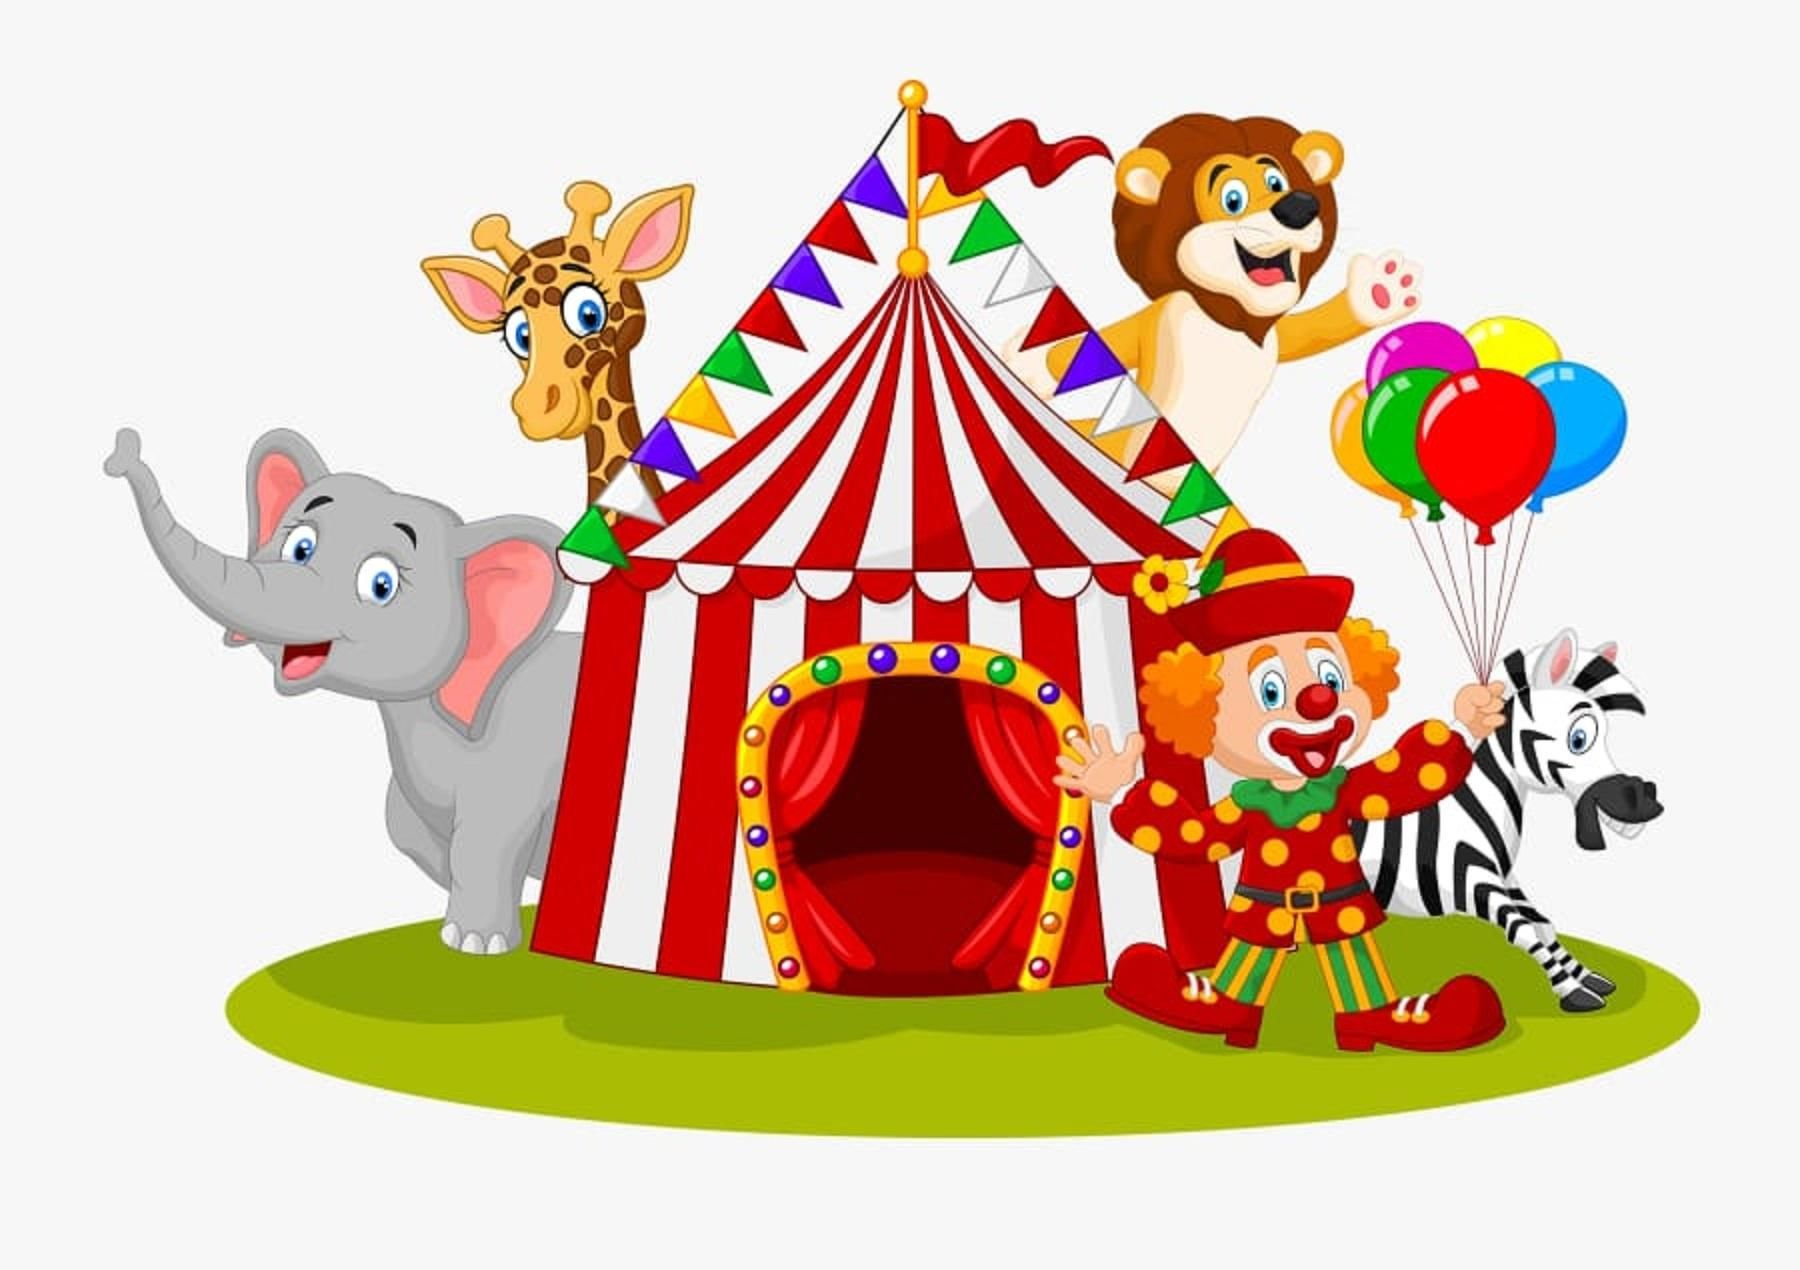 Цирковой шатер рисунок детский